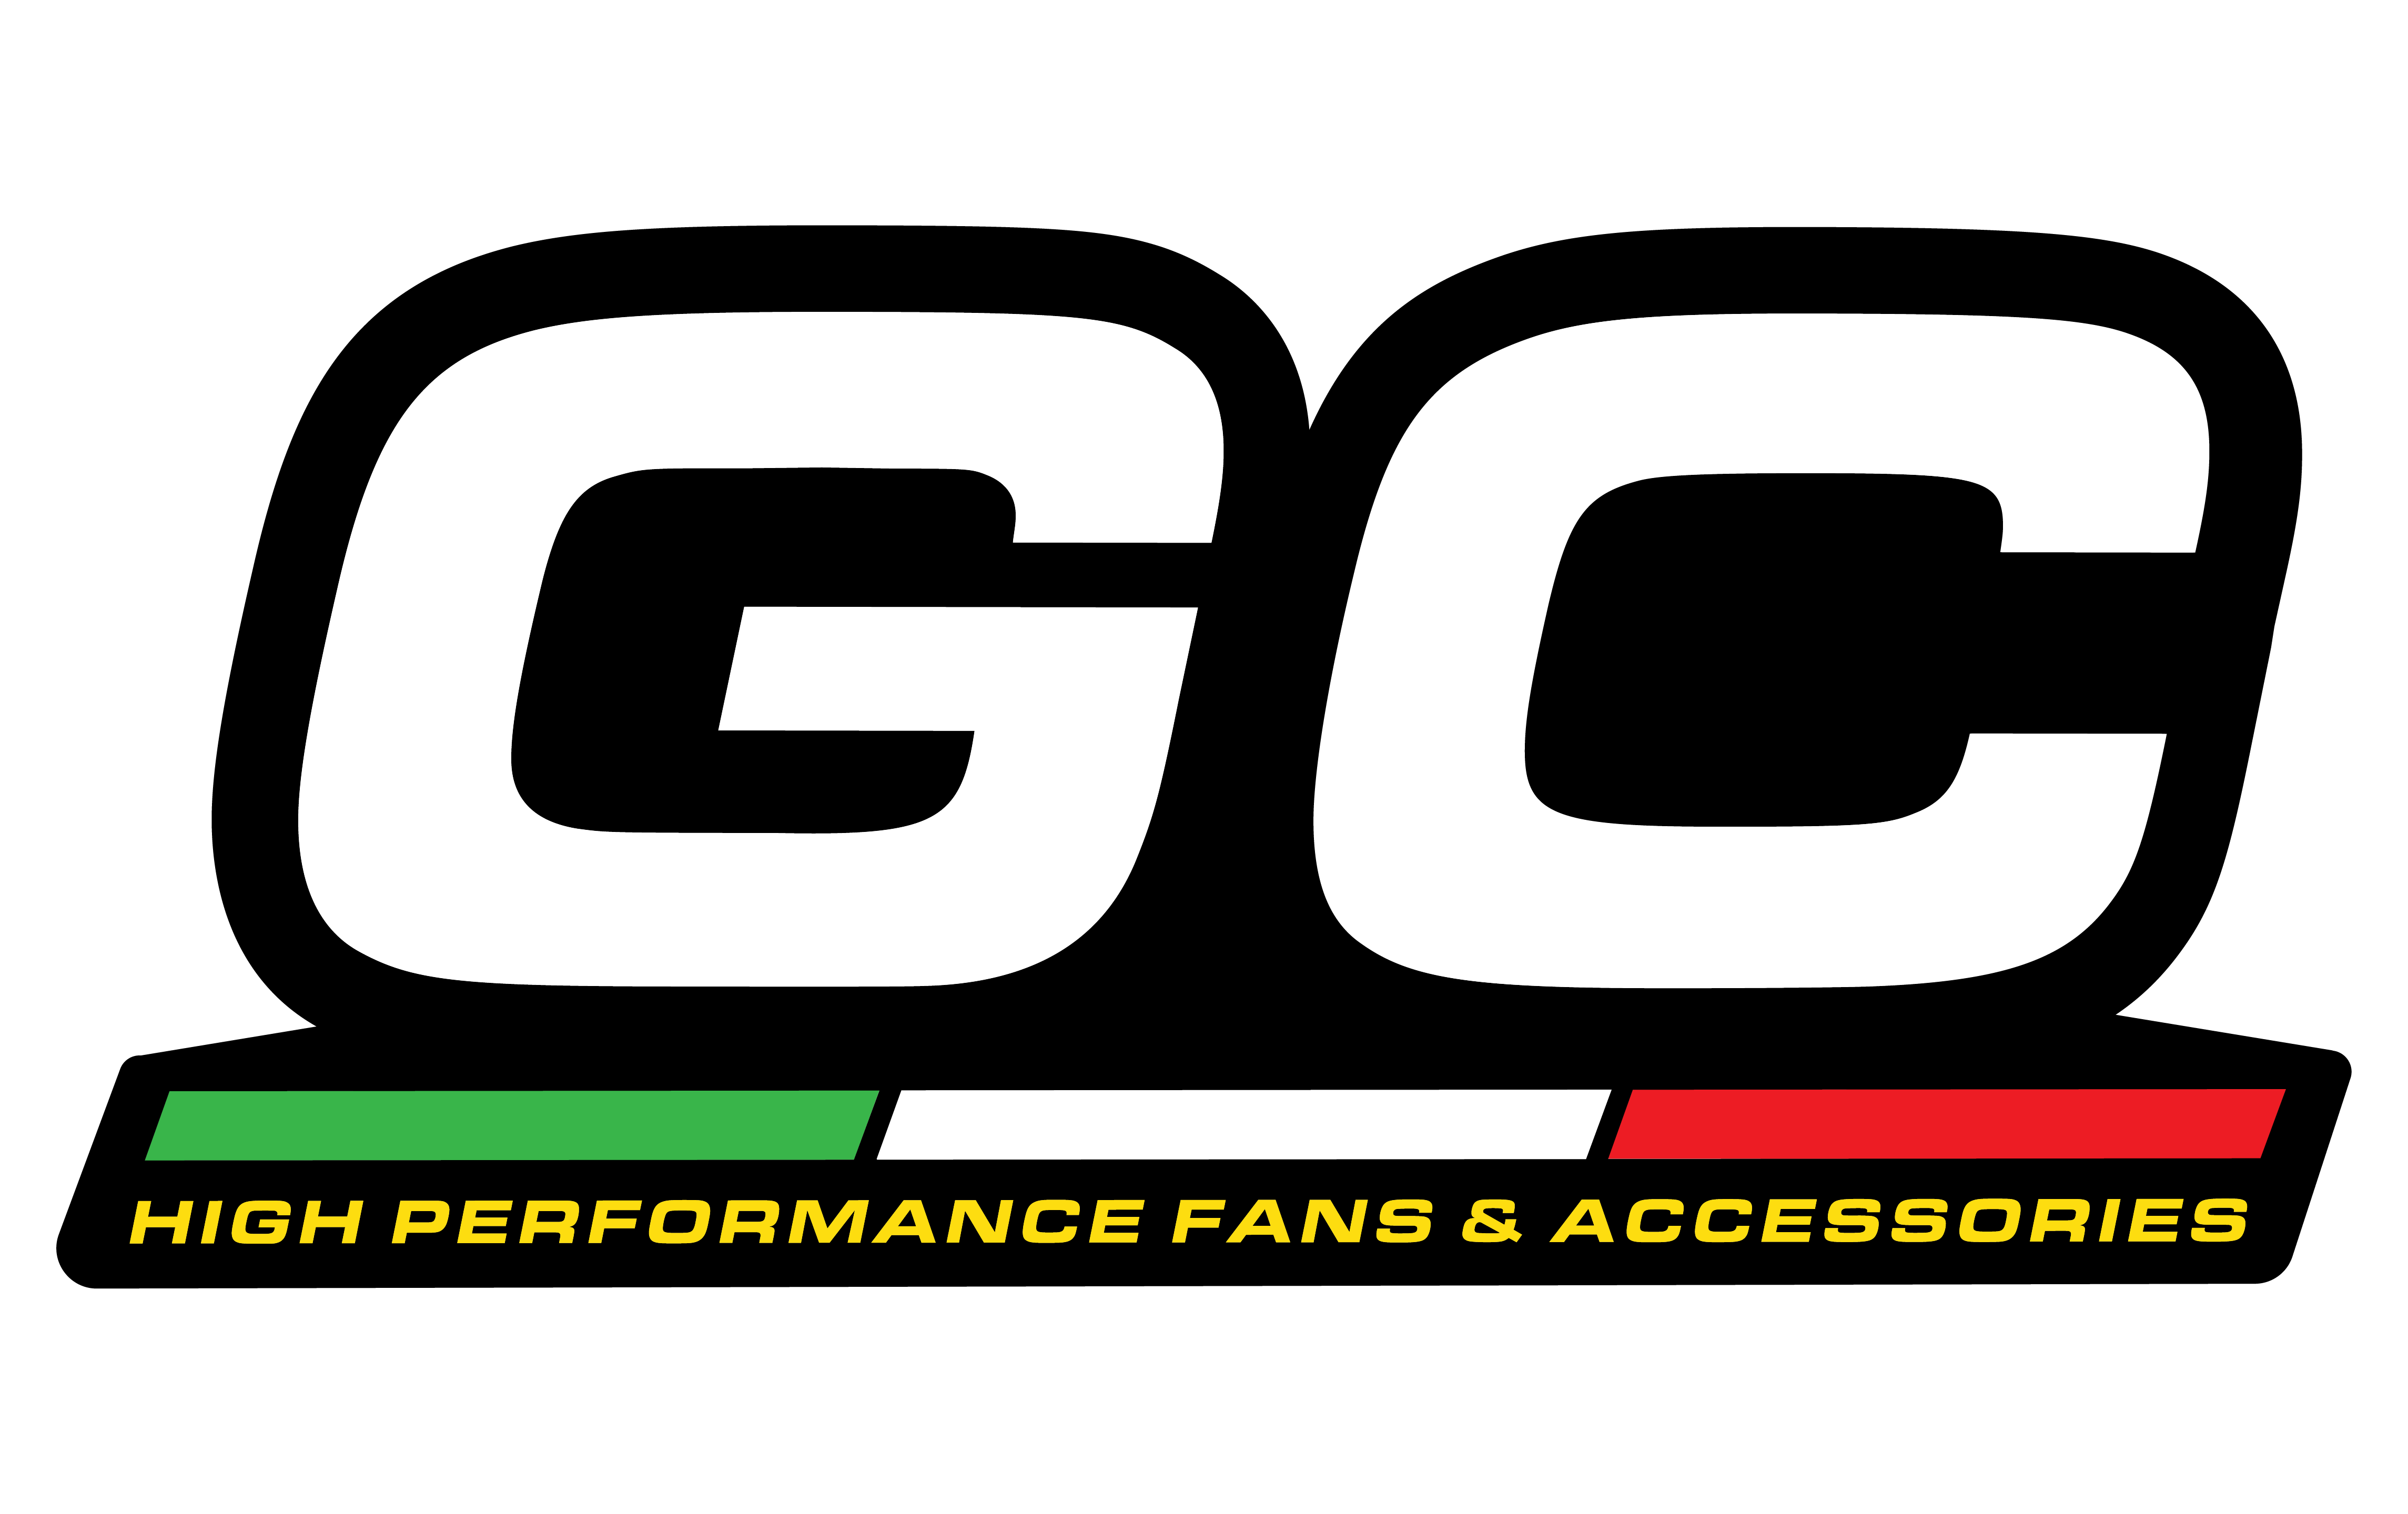 GC logo-01